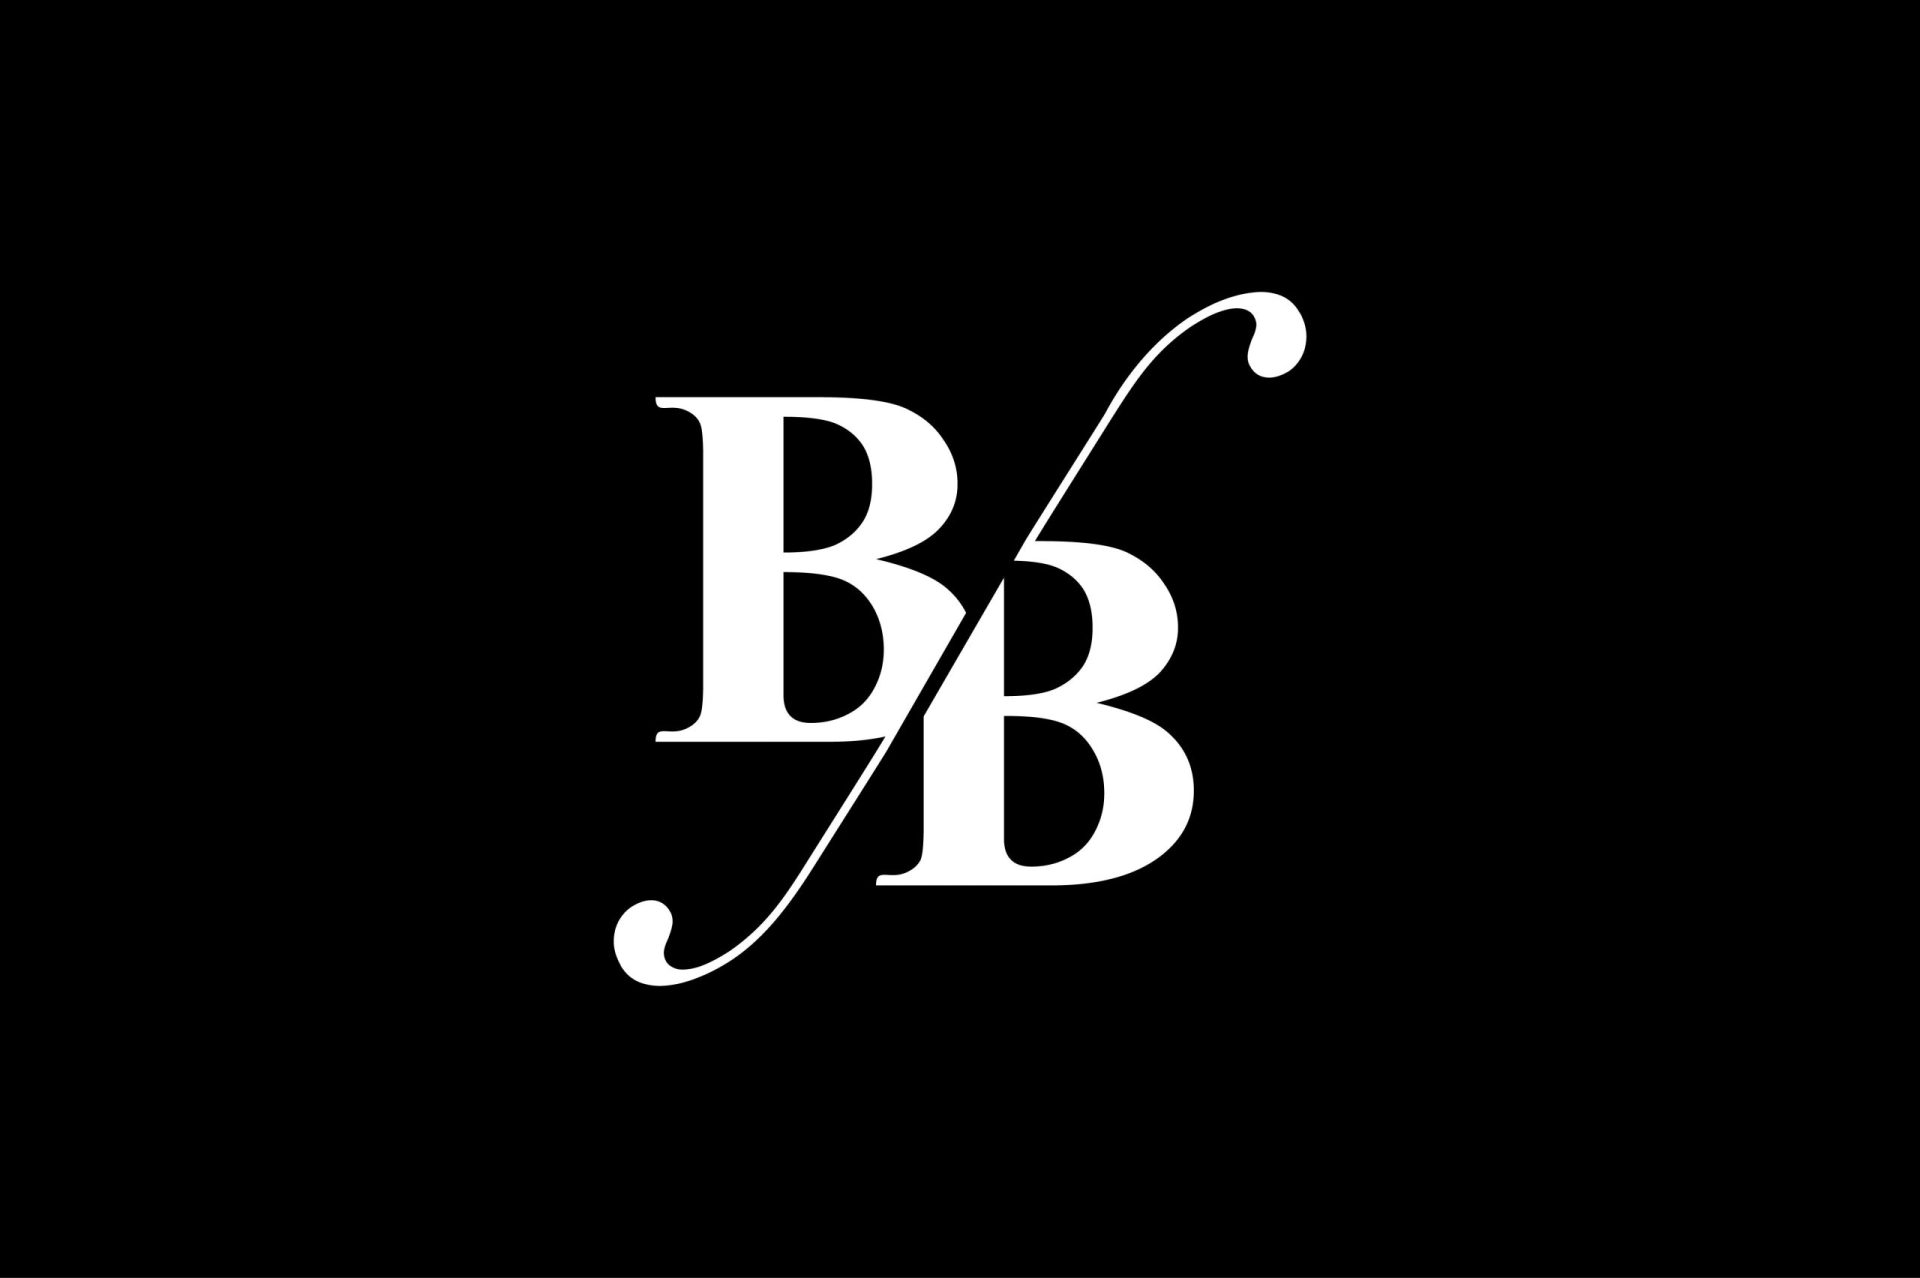 bb logo ideas 2